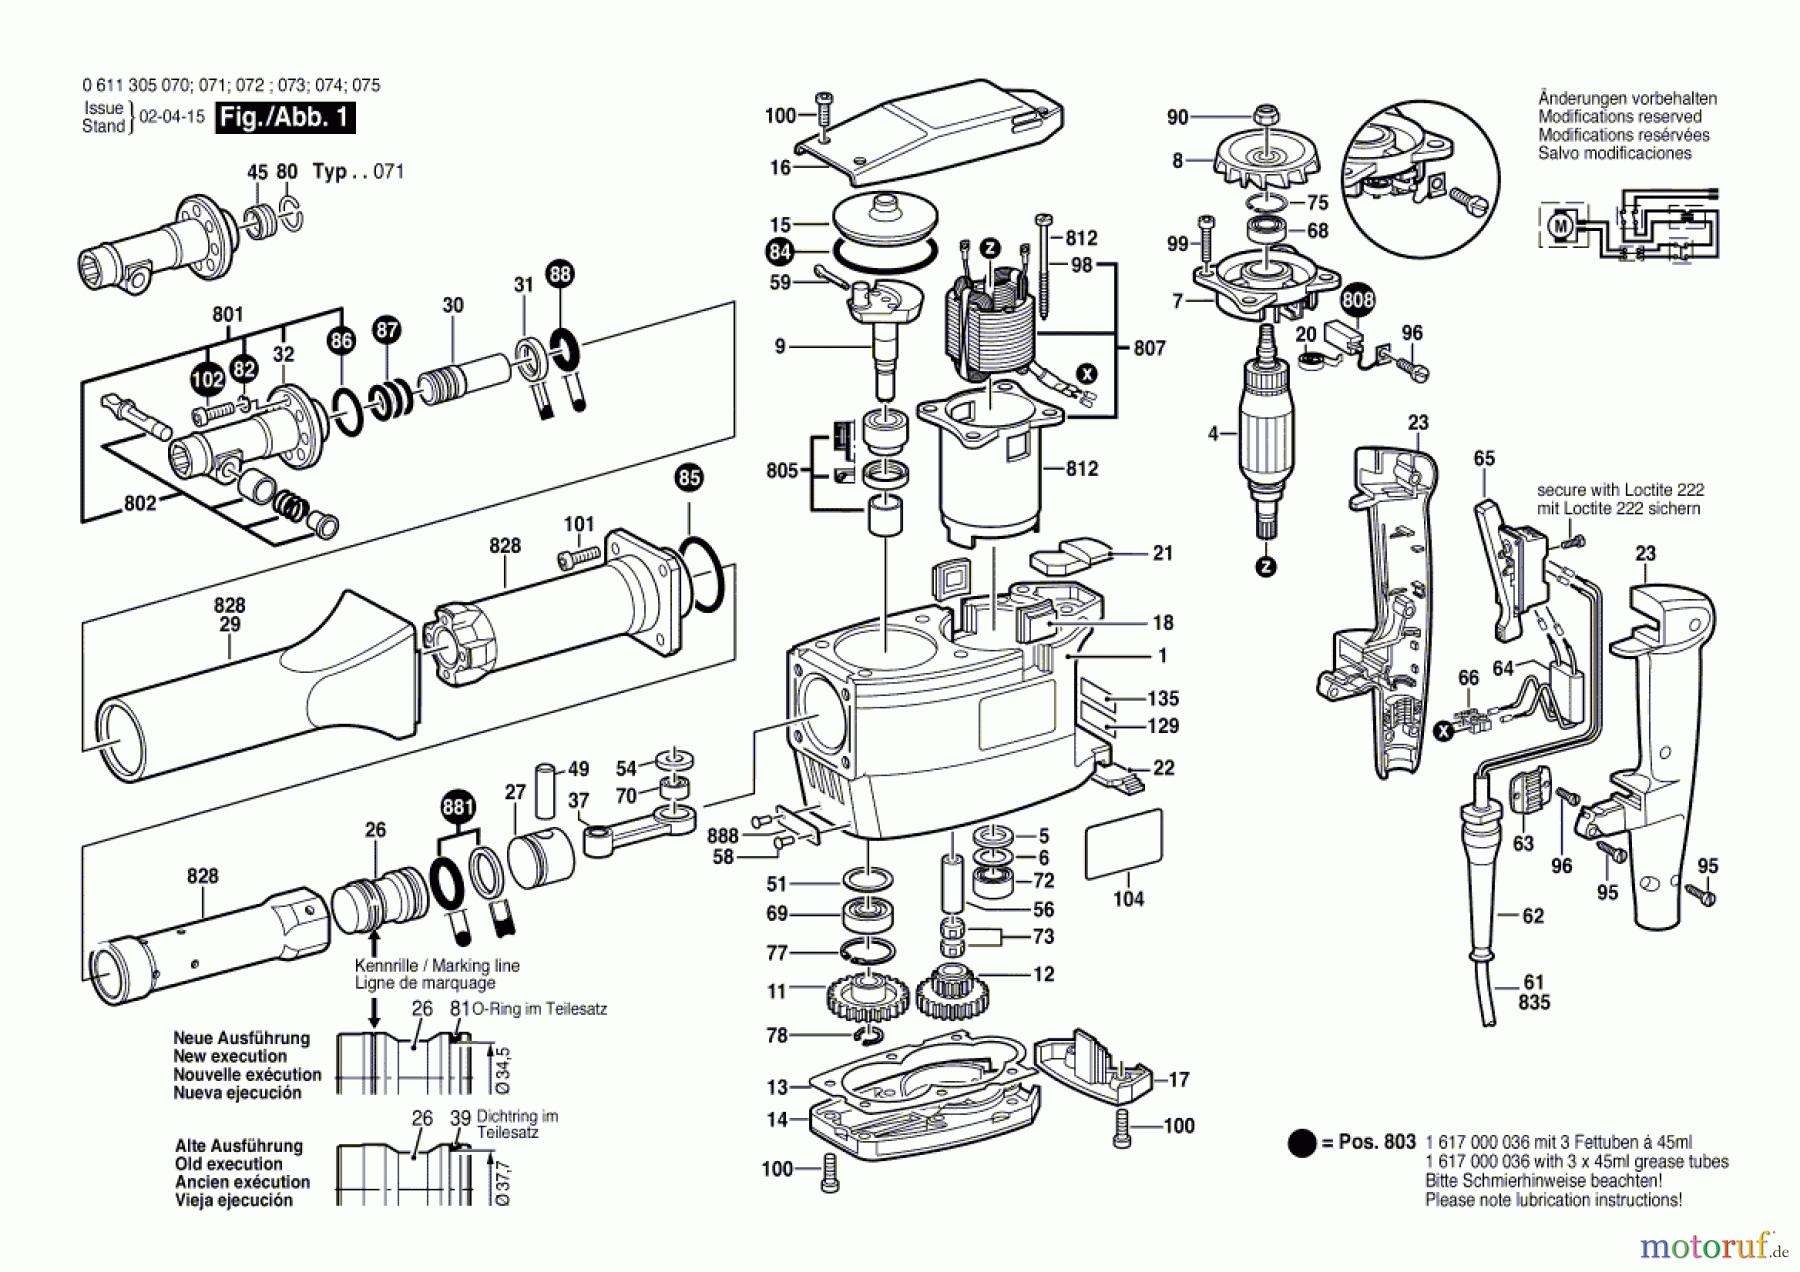  Bosch Werkzeug Schlaghammer 400 S Seite 1